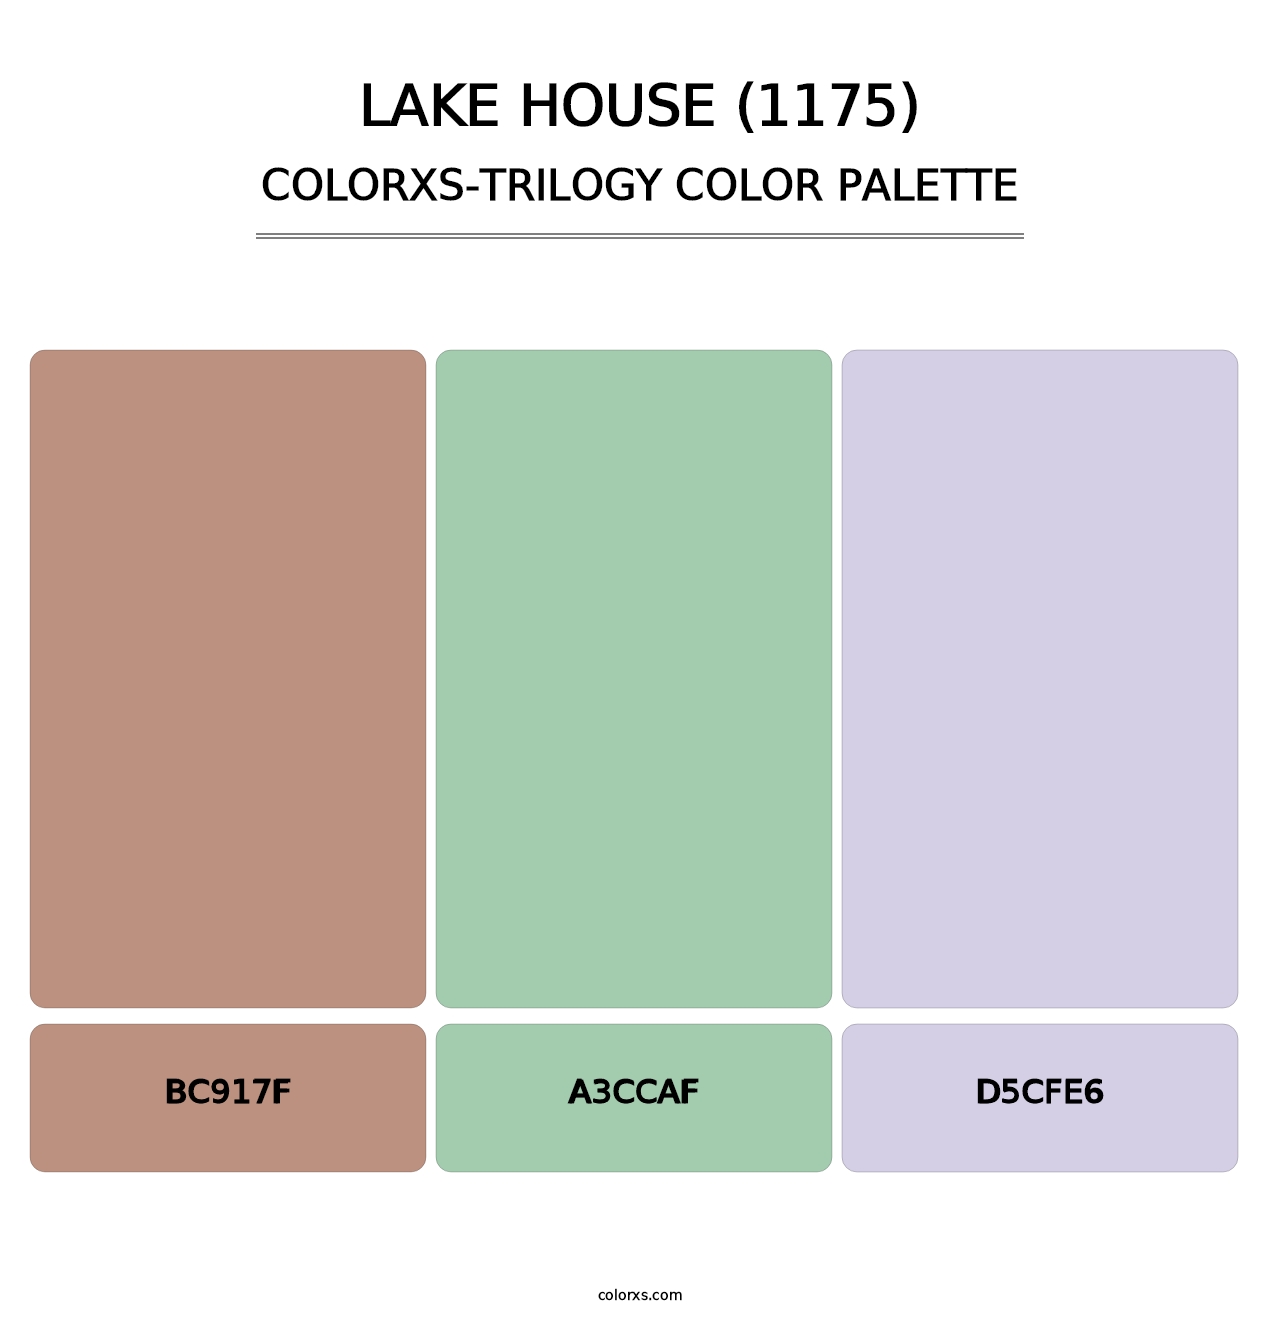 Lake House (1175) - Colorxs Trilogy Palette